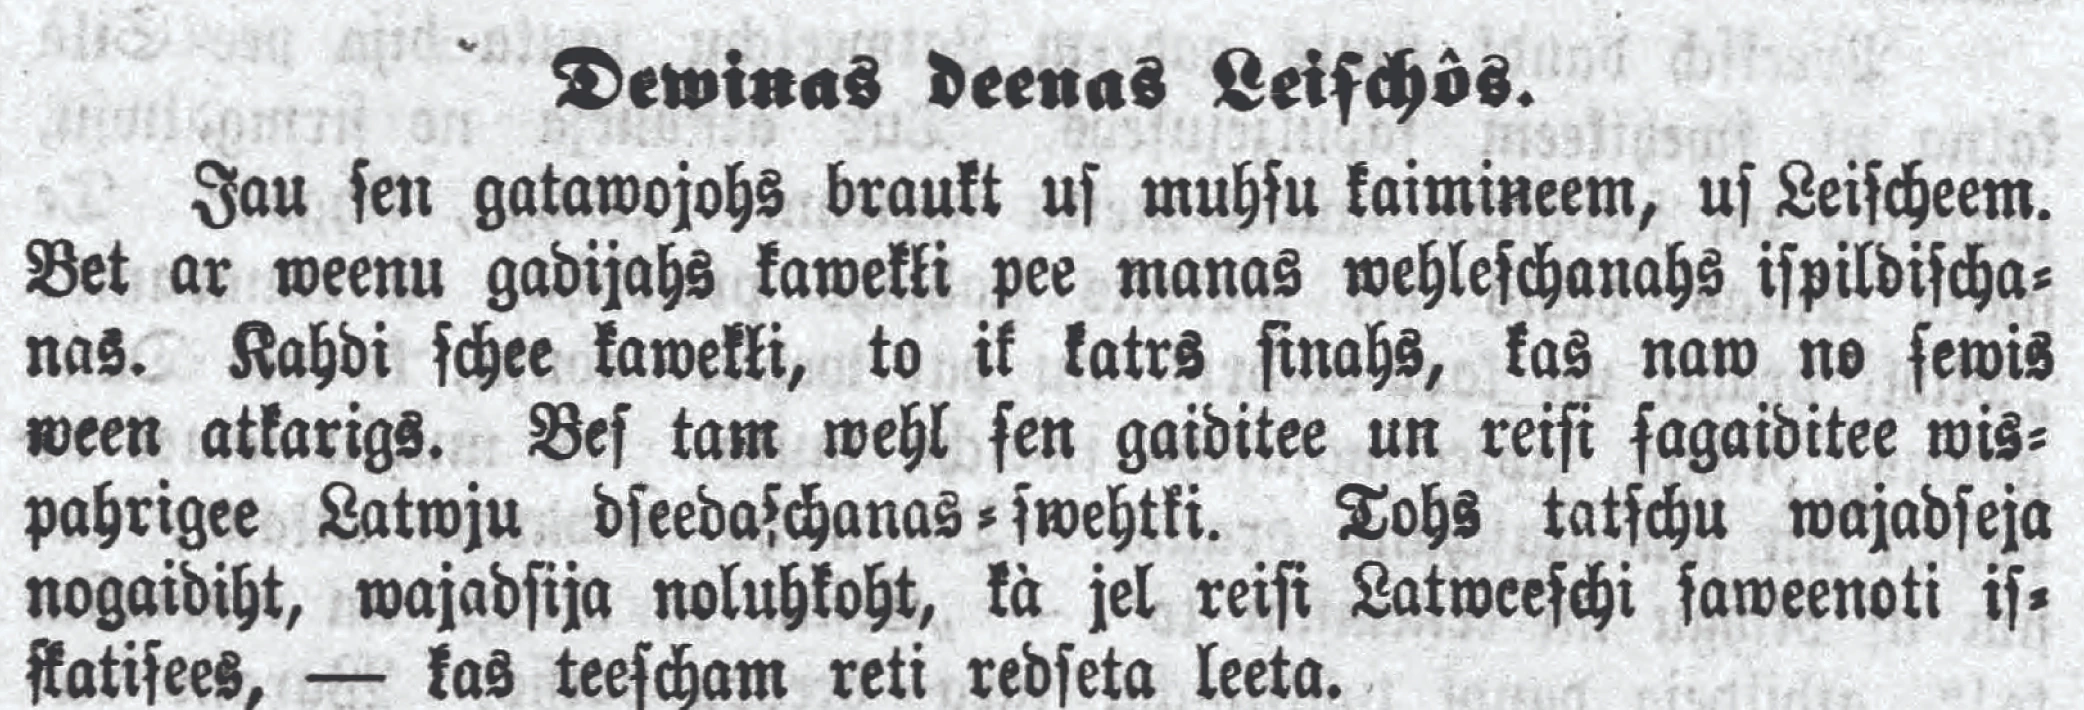 Lietuviai, šiauliečiai ir Šiauliai XIX a. Latvijos spaudoje: dviejų publikacijų pėdsakais